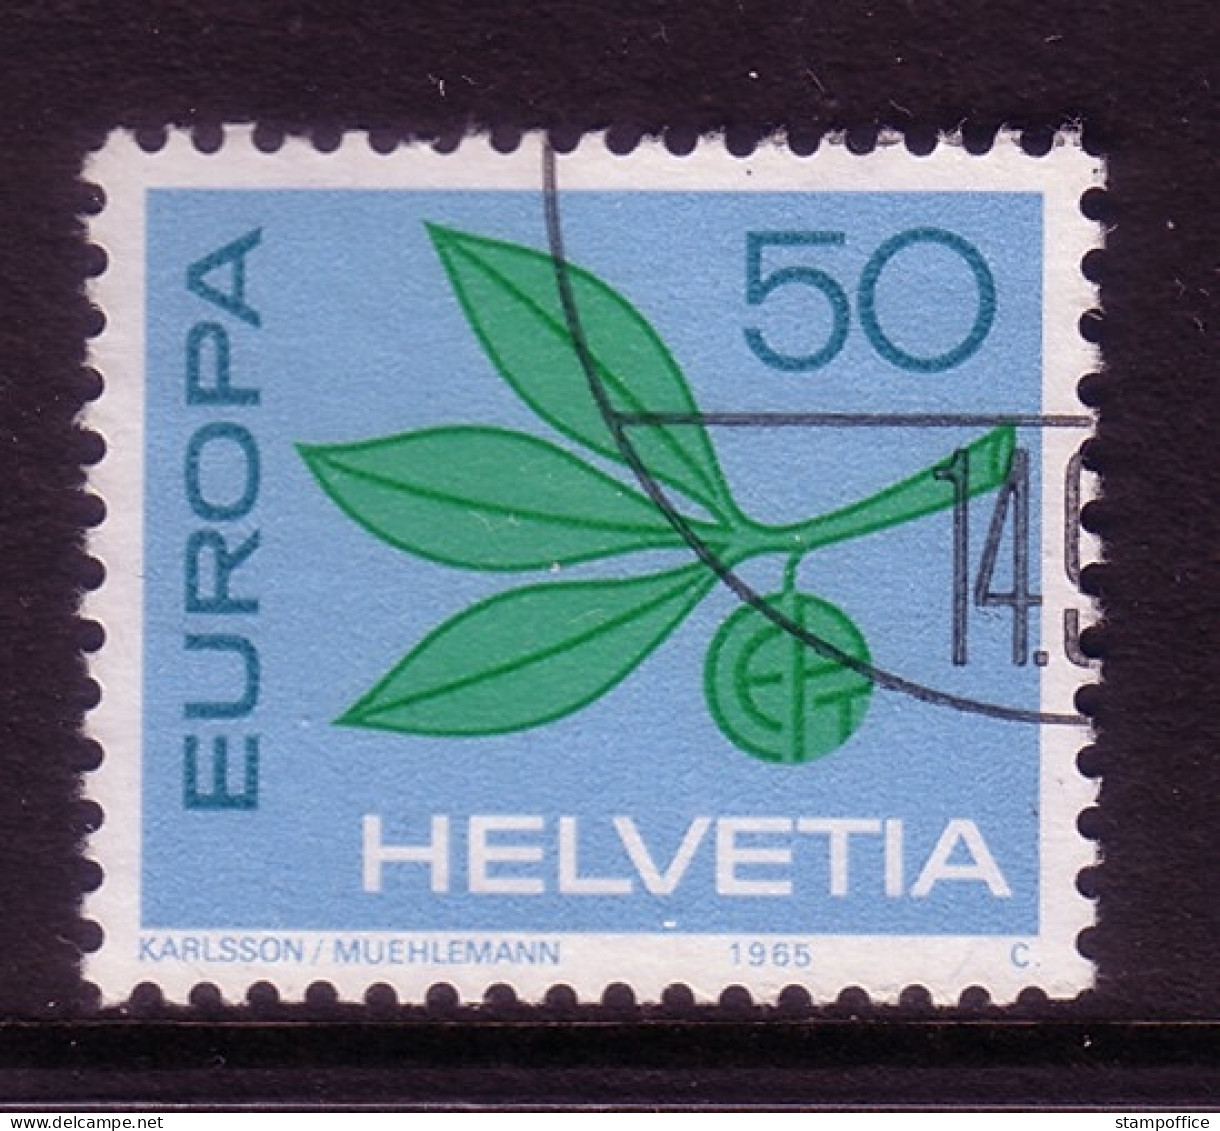 SCHWEIZ MI-NR. 825 O EUROPA 1965 - ZWEIG - 1965